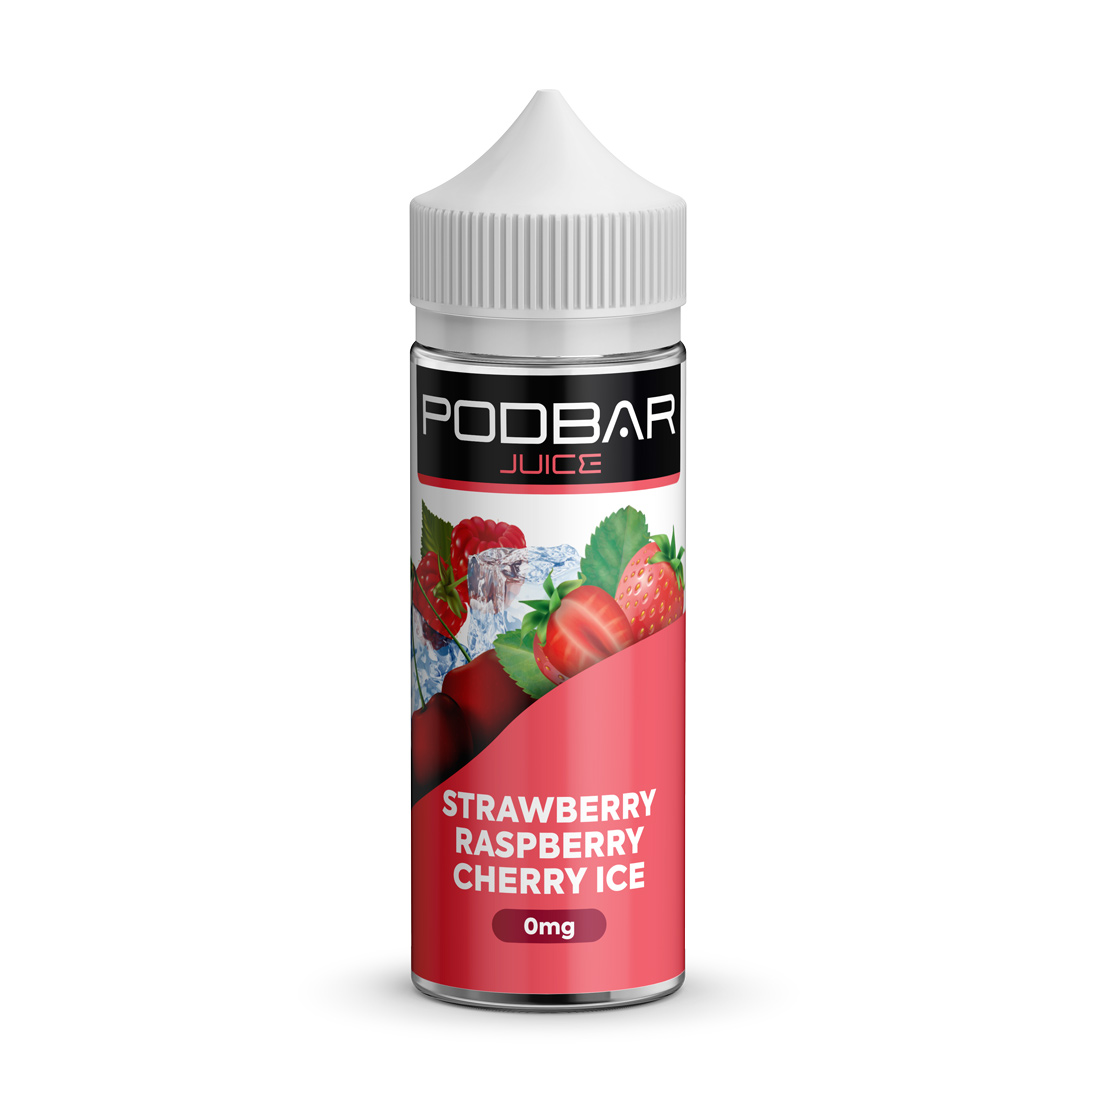 Podbar Juice Strawberry Raspberry Cherry Ice